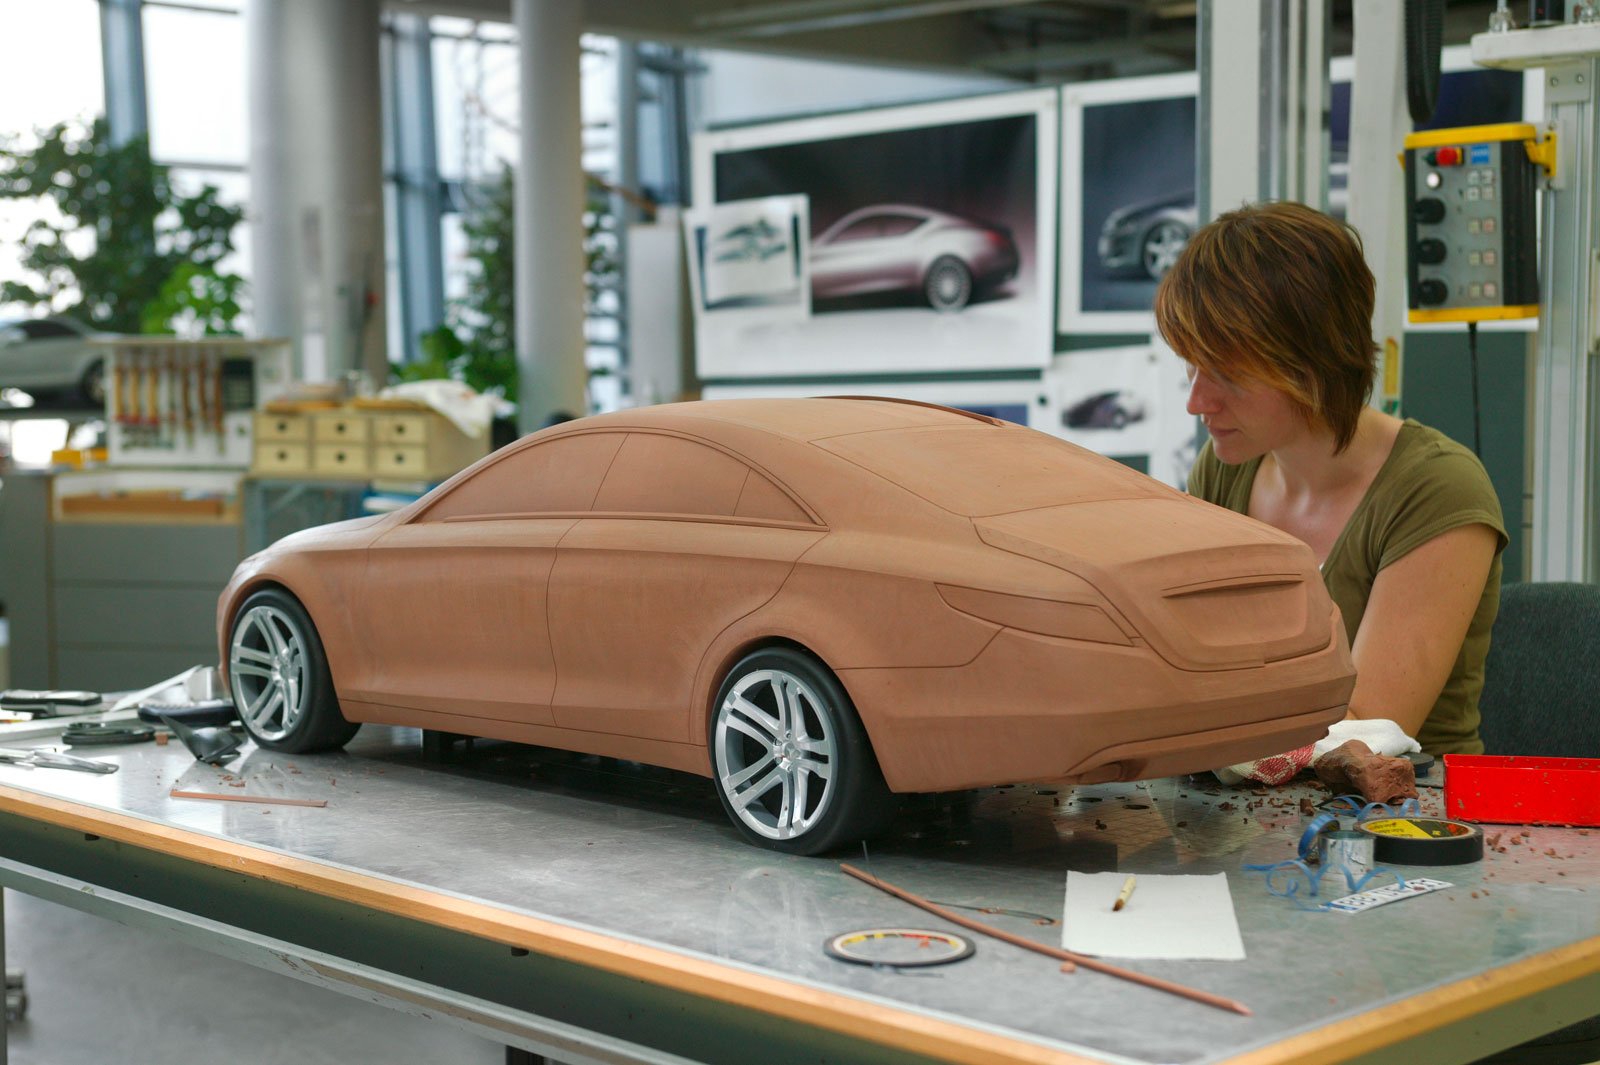 Форма машина купить. 3d моделирование в автопромышленности. Муляж автомобиля. Пластилиновые макеты автомобилей. Моделирование автомобилей.